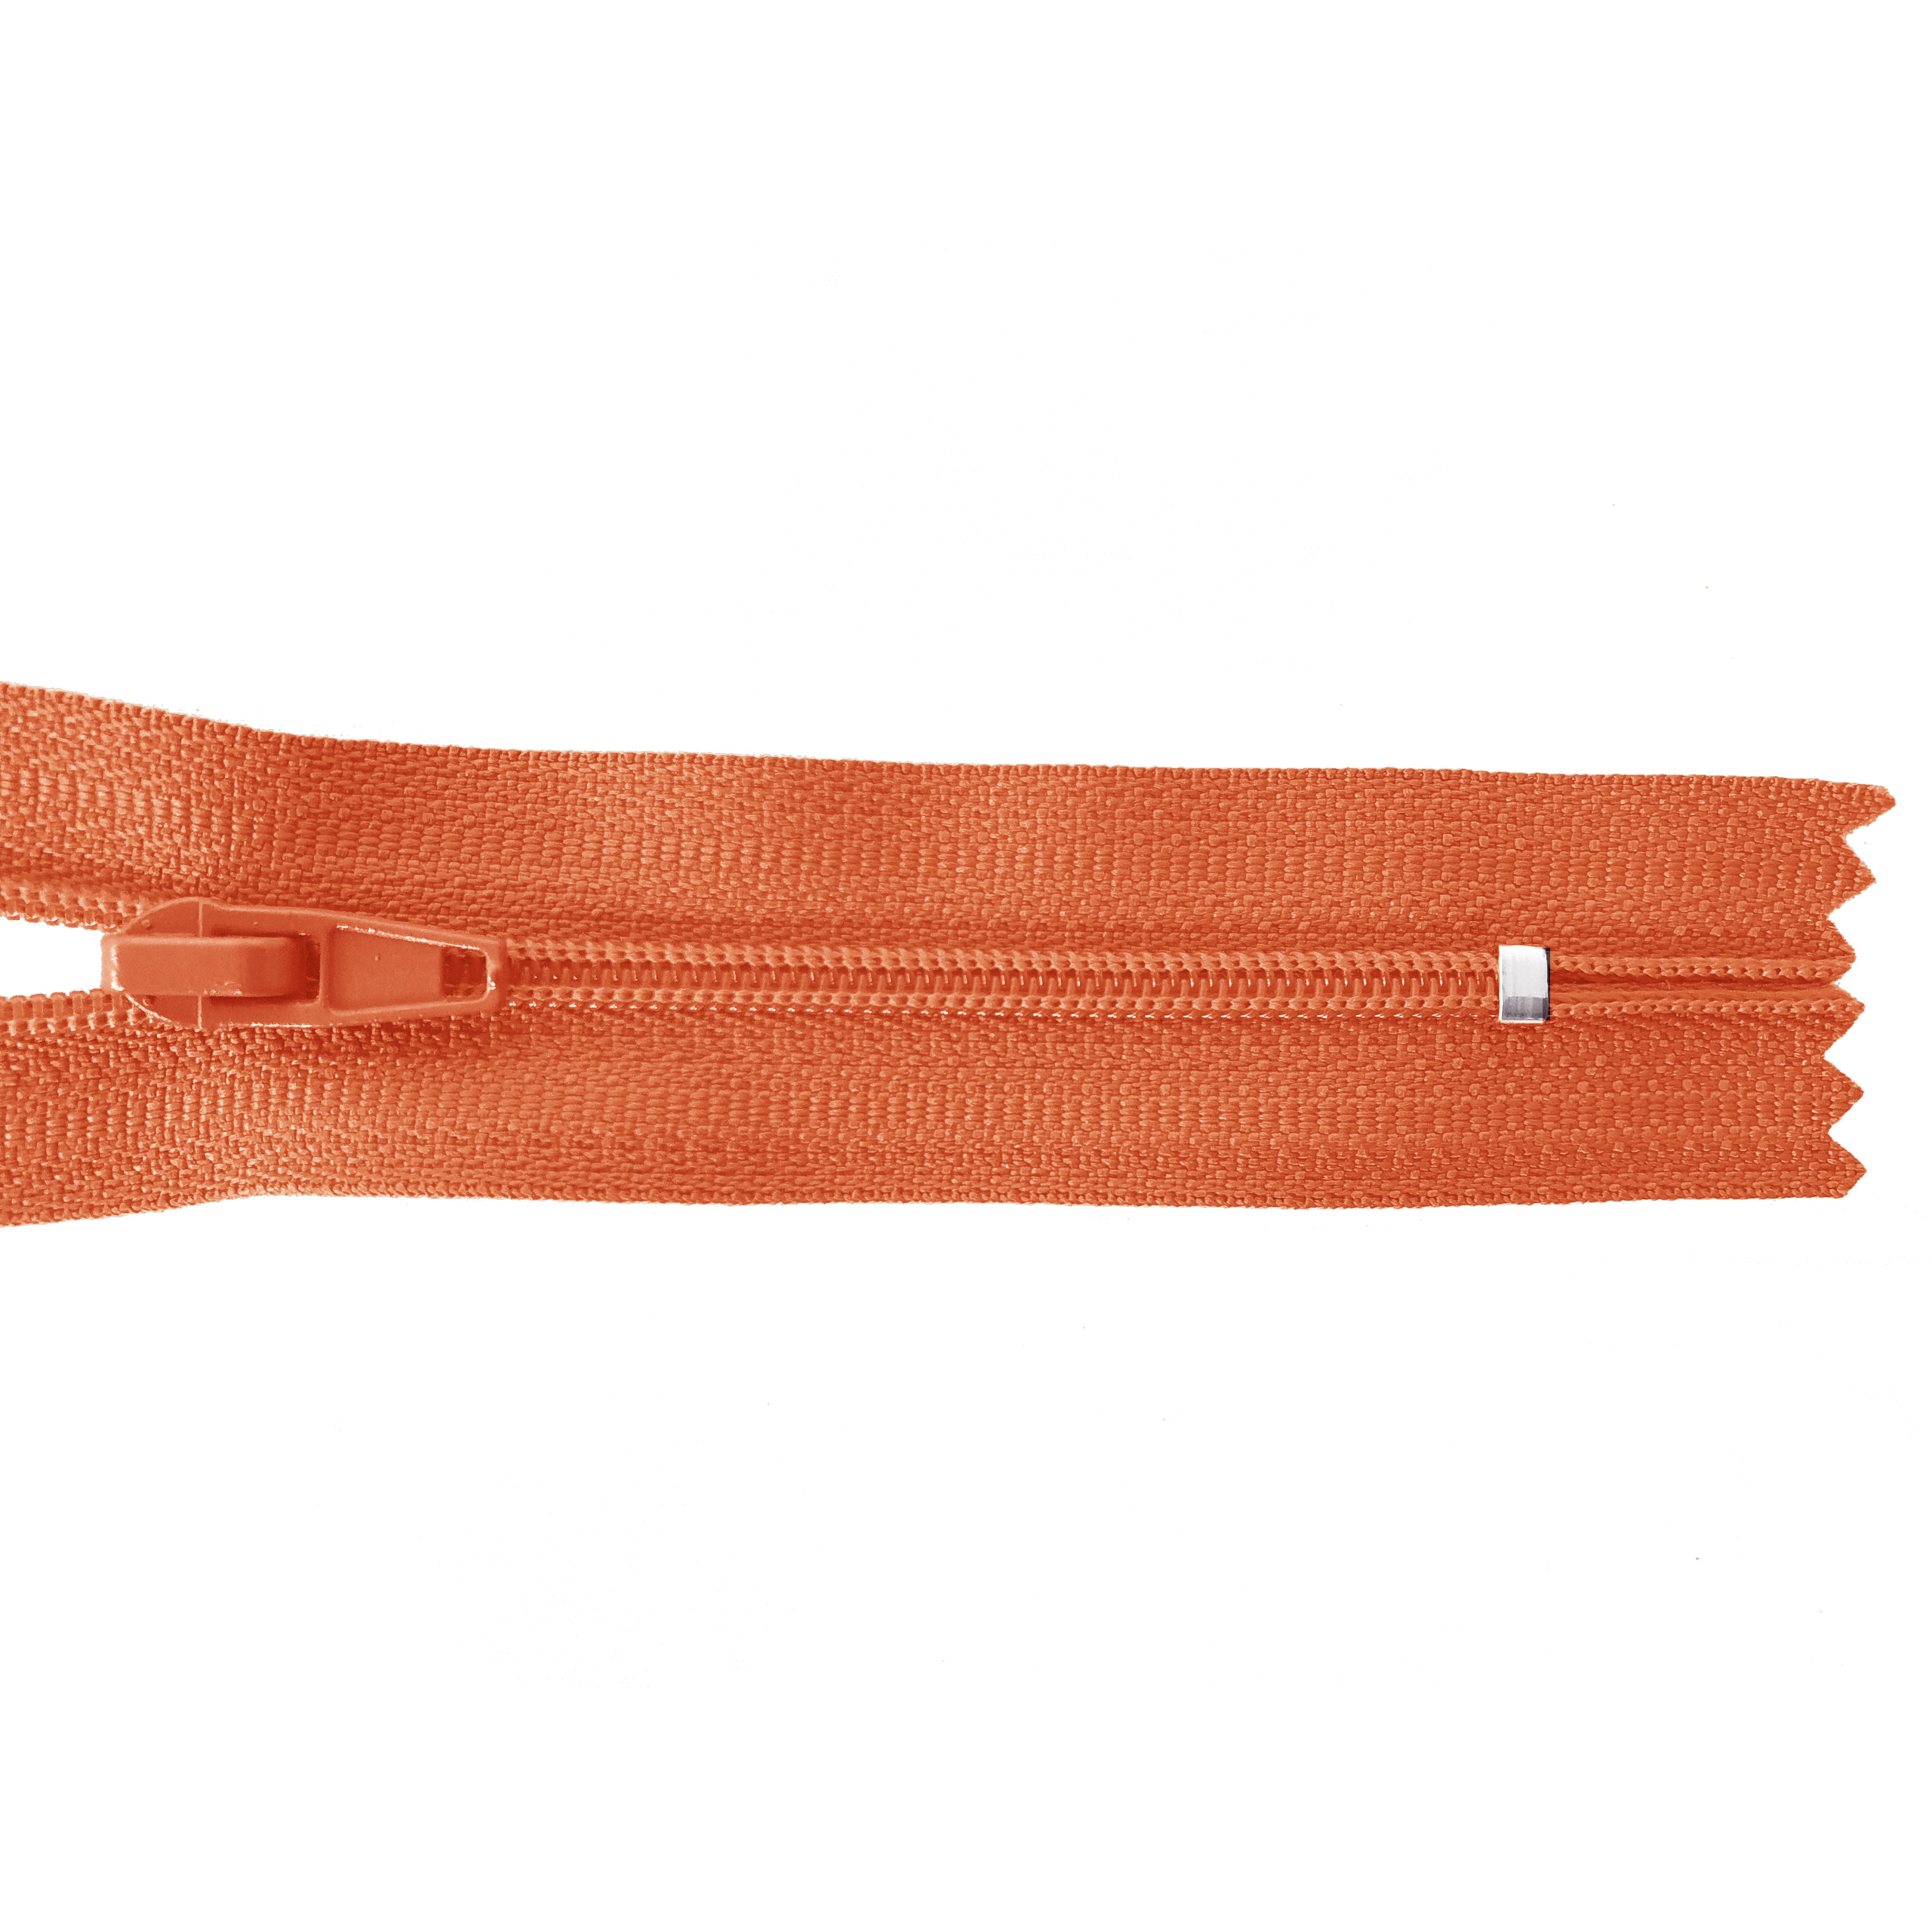 Reißverschluss nicht teilbar, PES-Spirale fein, orange, hochwertiger Marken-Reißverschluss von Rubi/Barcelona